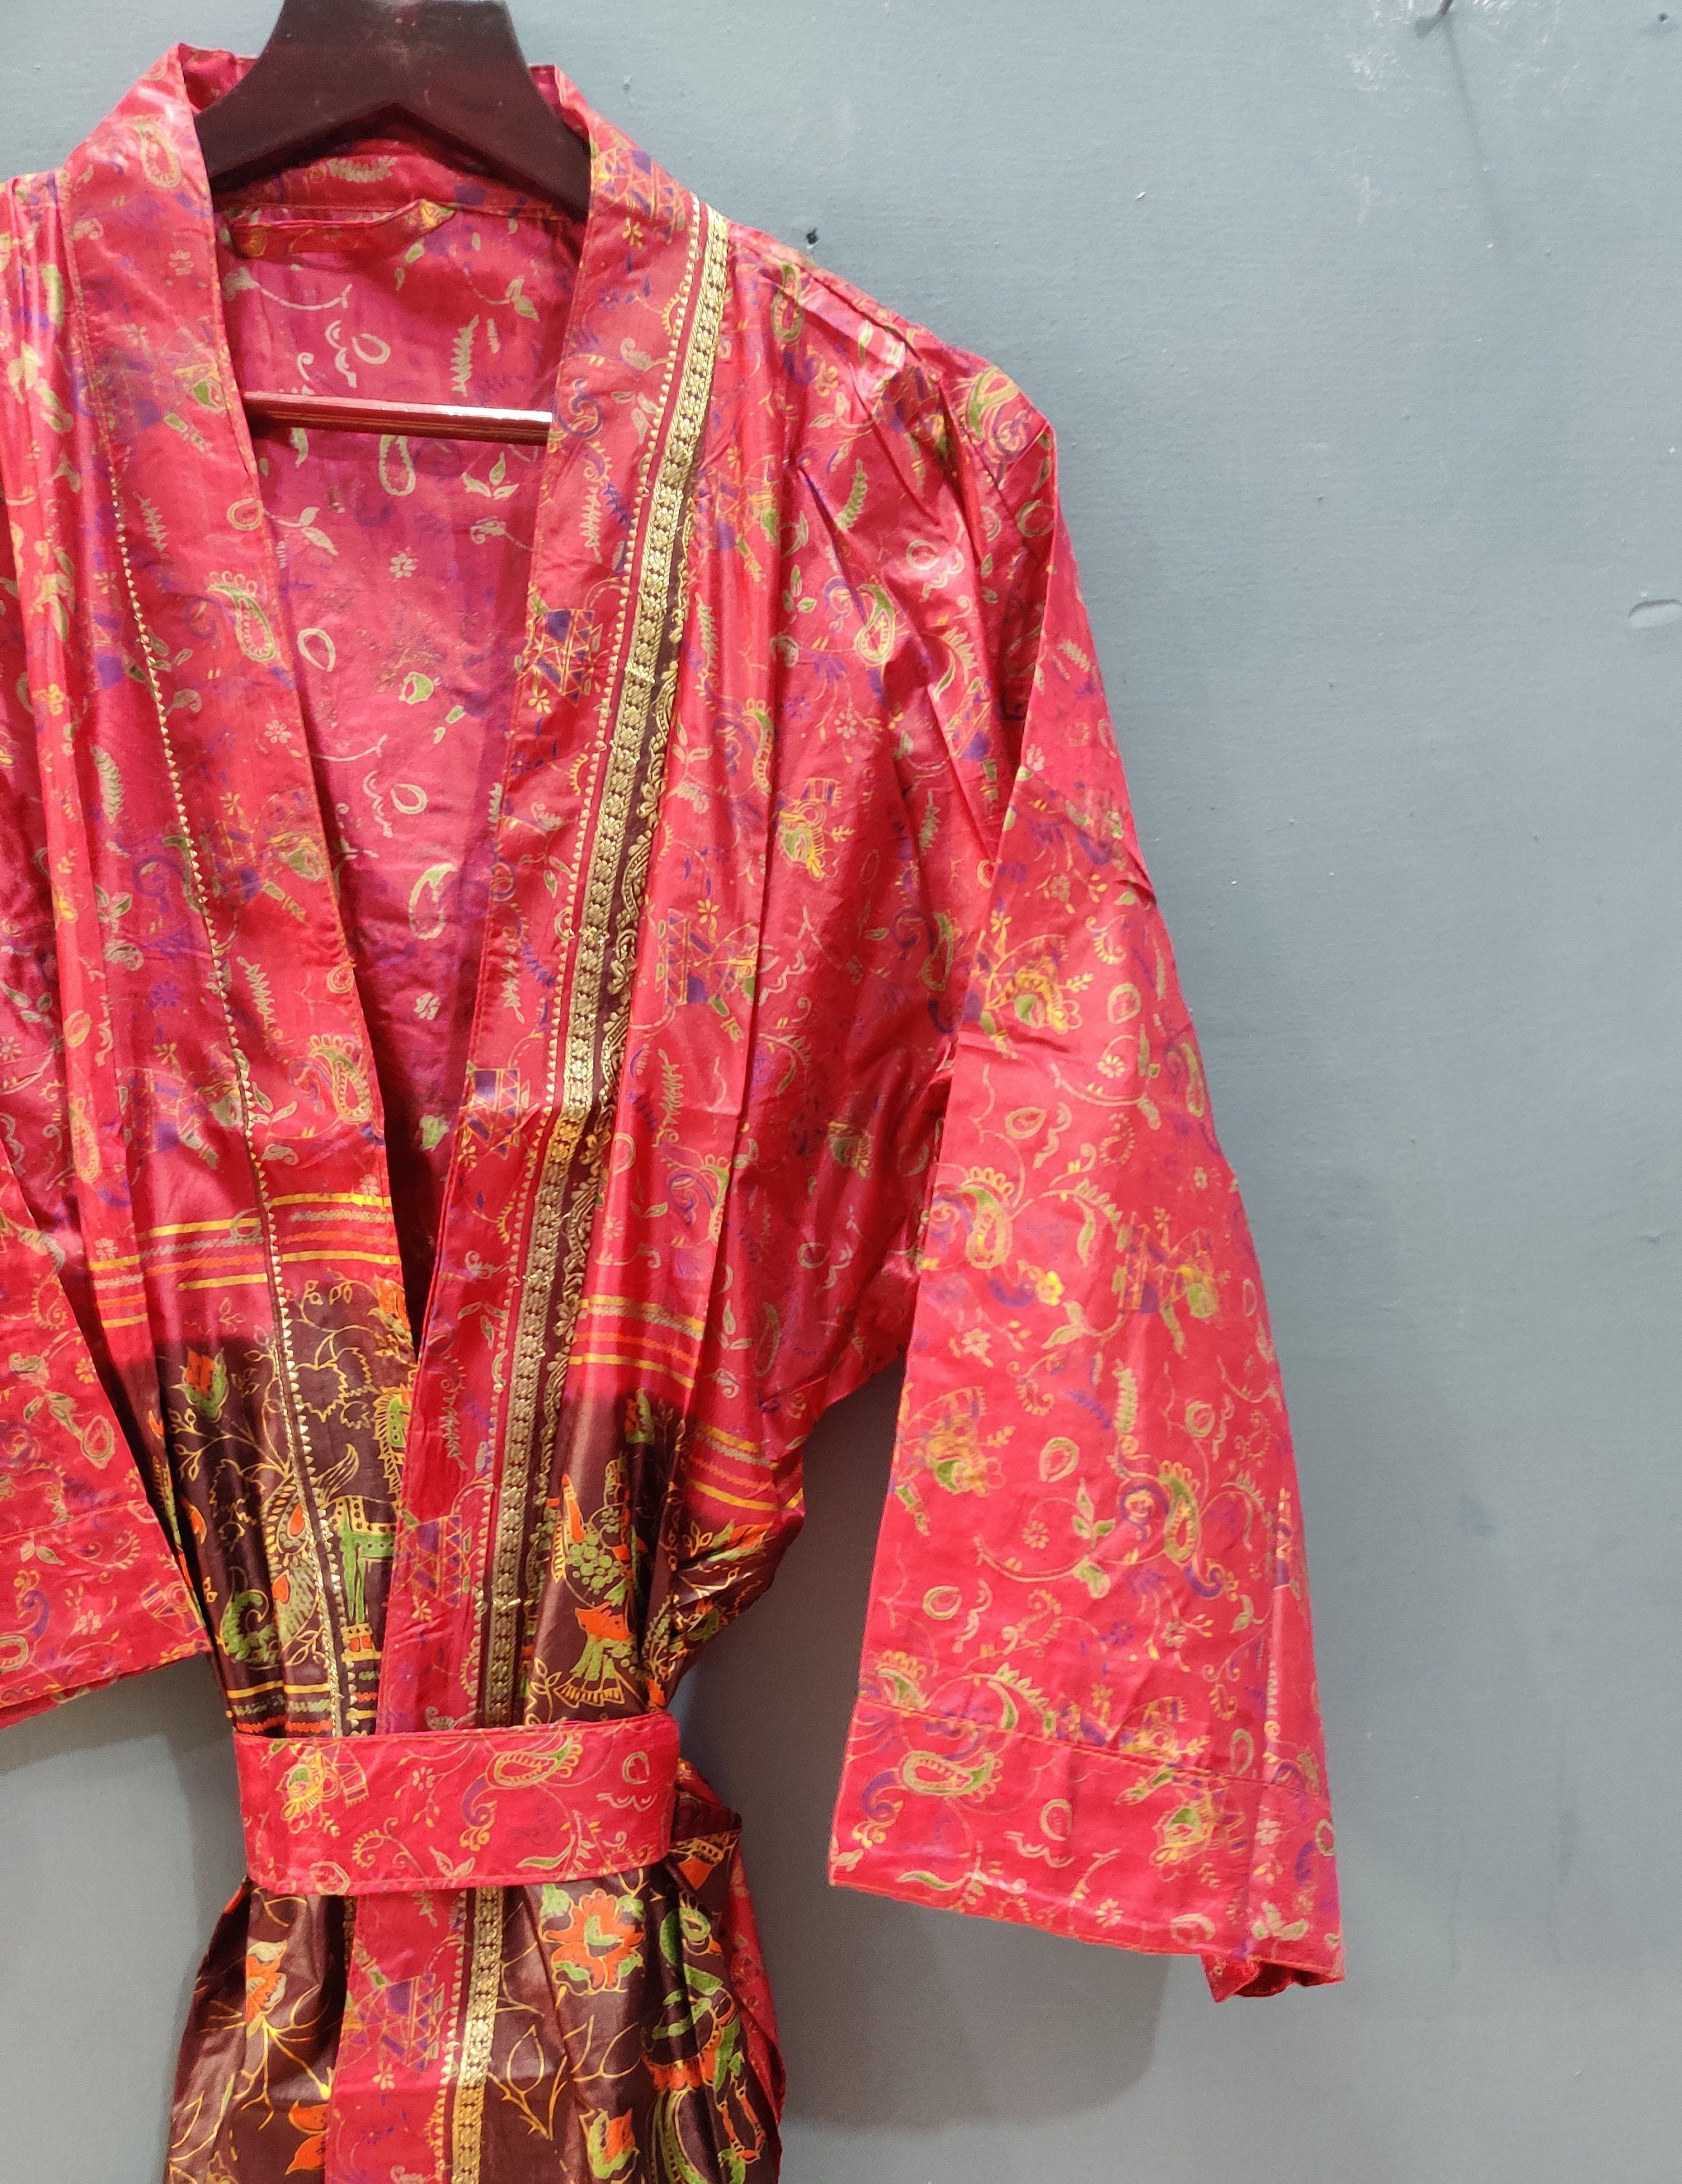 EXPRESS DELIVERY-Vintage Silk Sari Kimono Robe Vintage Robe | Etsy